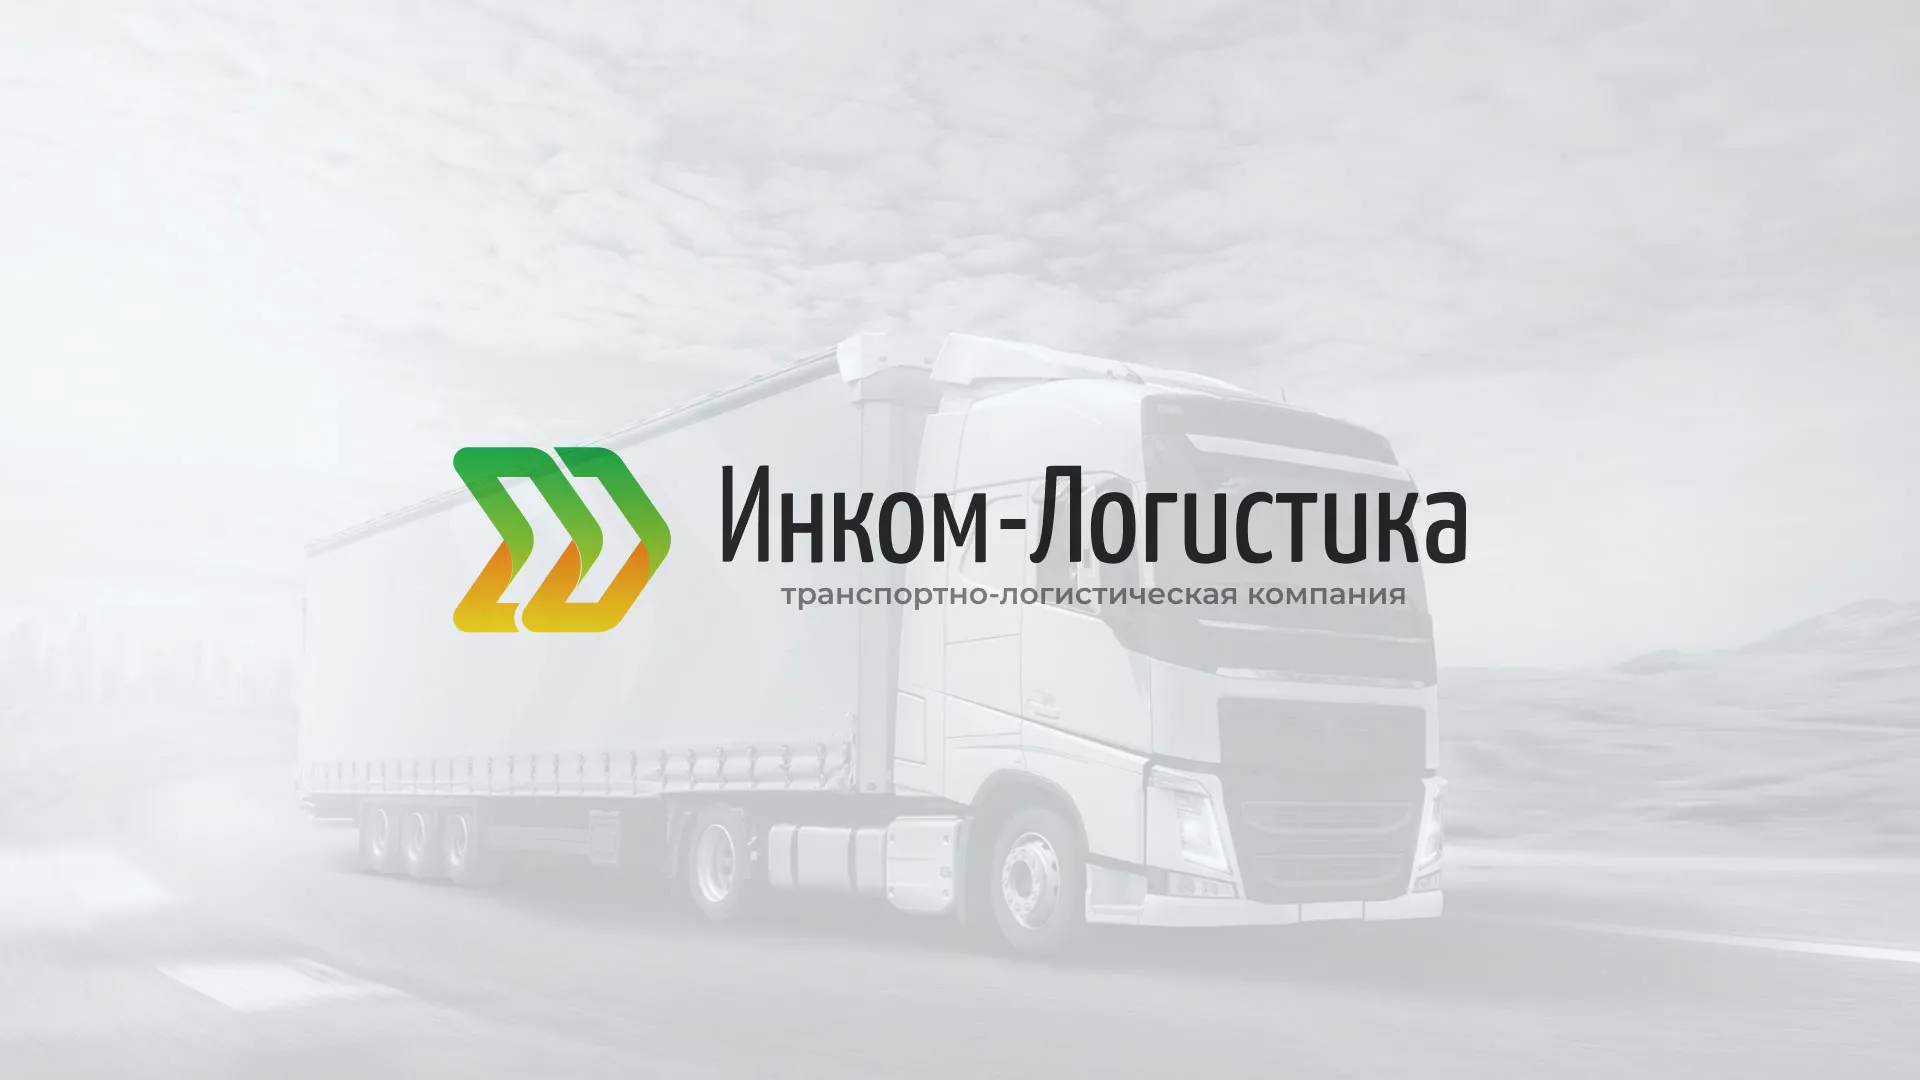 Разработка логотипа и сайта компании «Инком-Логистика» в Челябинске